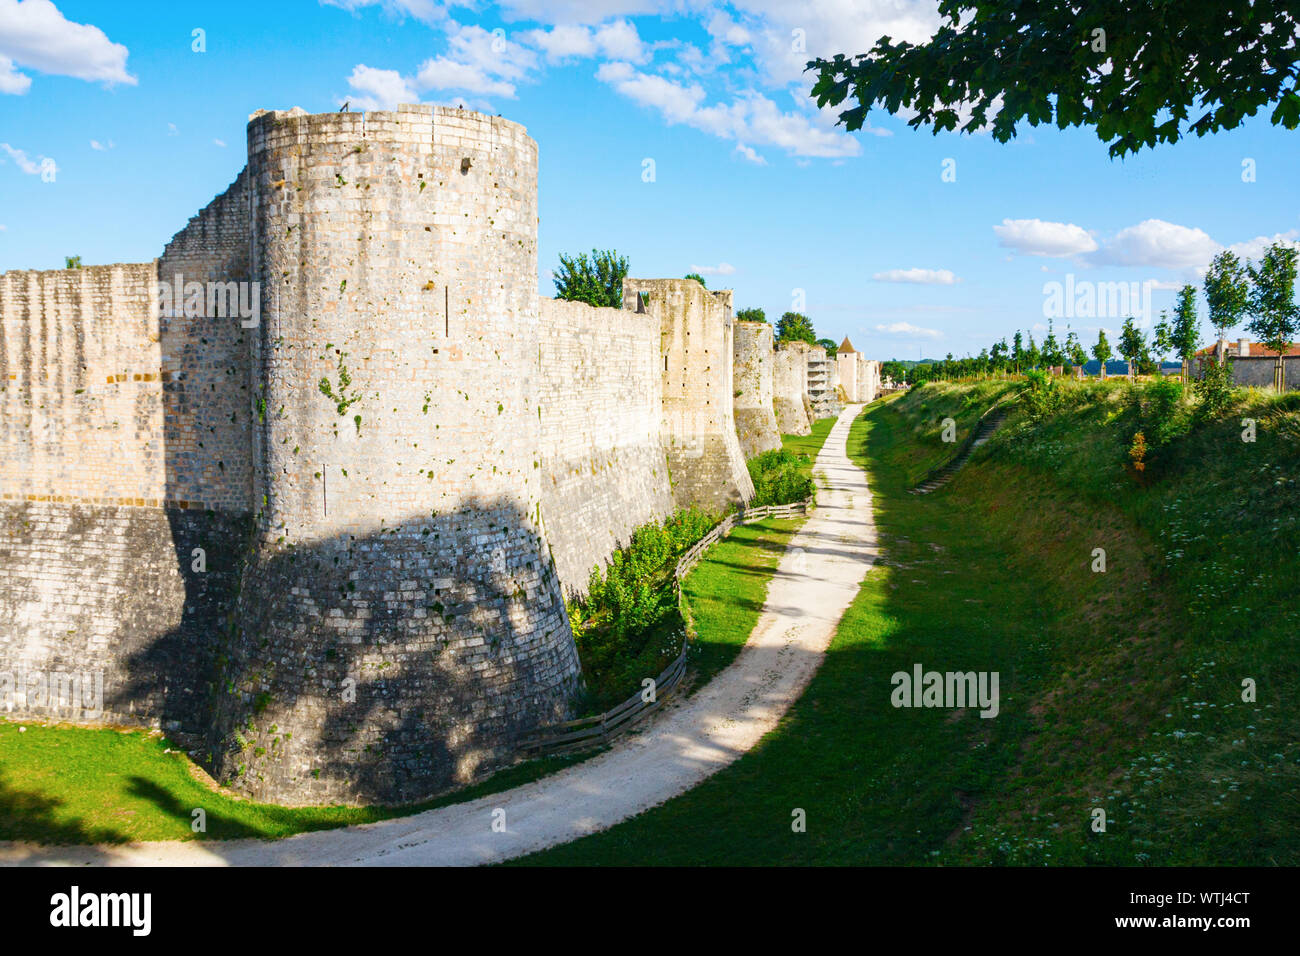 Mura medievali della città rinforzata con una massiccia torre rotonda e da un profondo fossato sotto un cielo blu con nuvole in una giornata di sole. Provins, Seine-et-Marne, Francia. Foto Stock